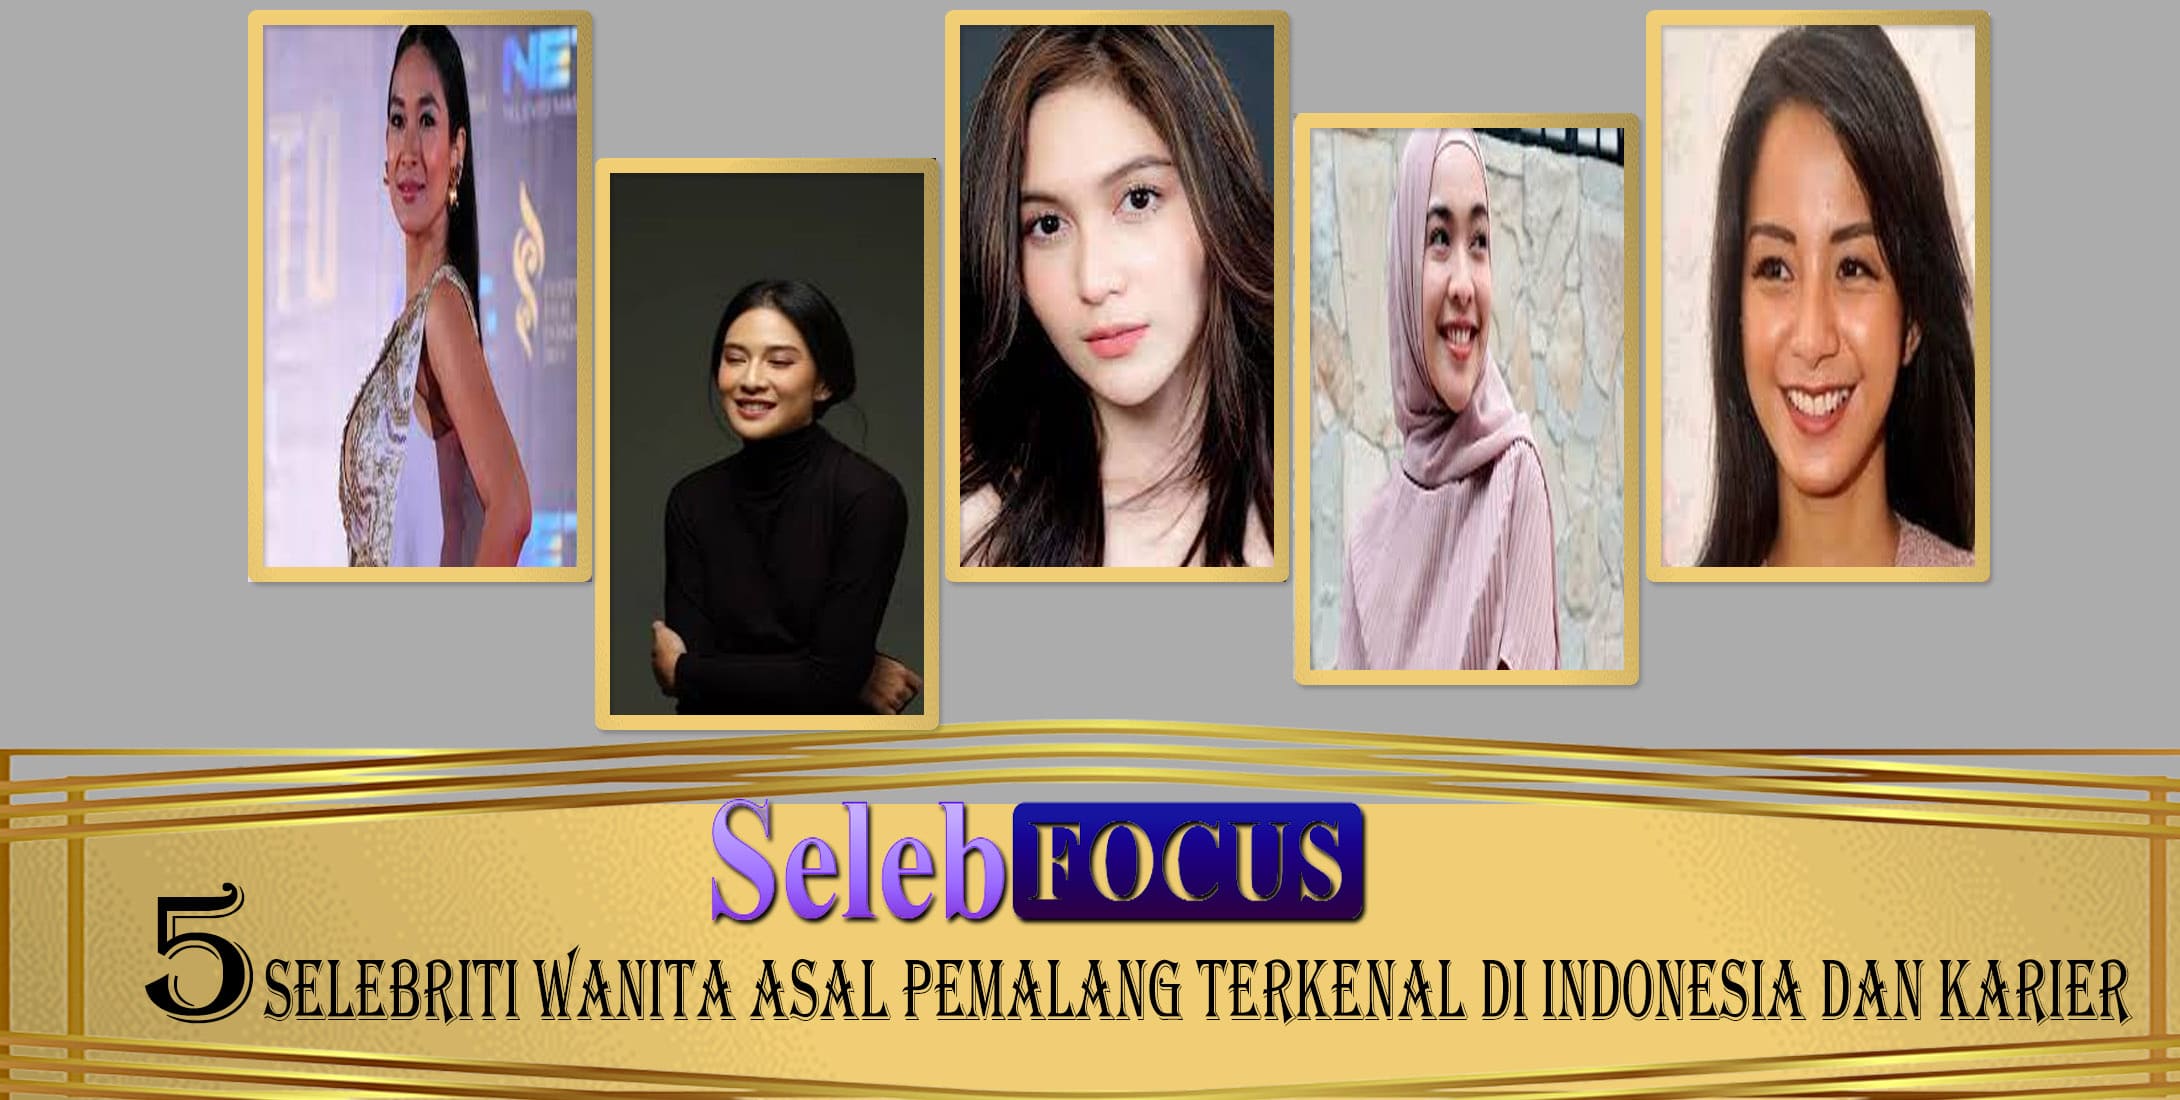 5 Selebriti Wanita Pemalang Terkenal di Indonesia dan Karier